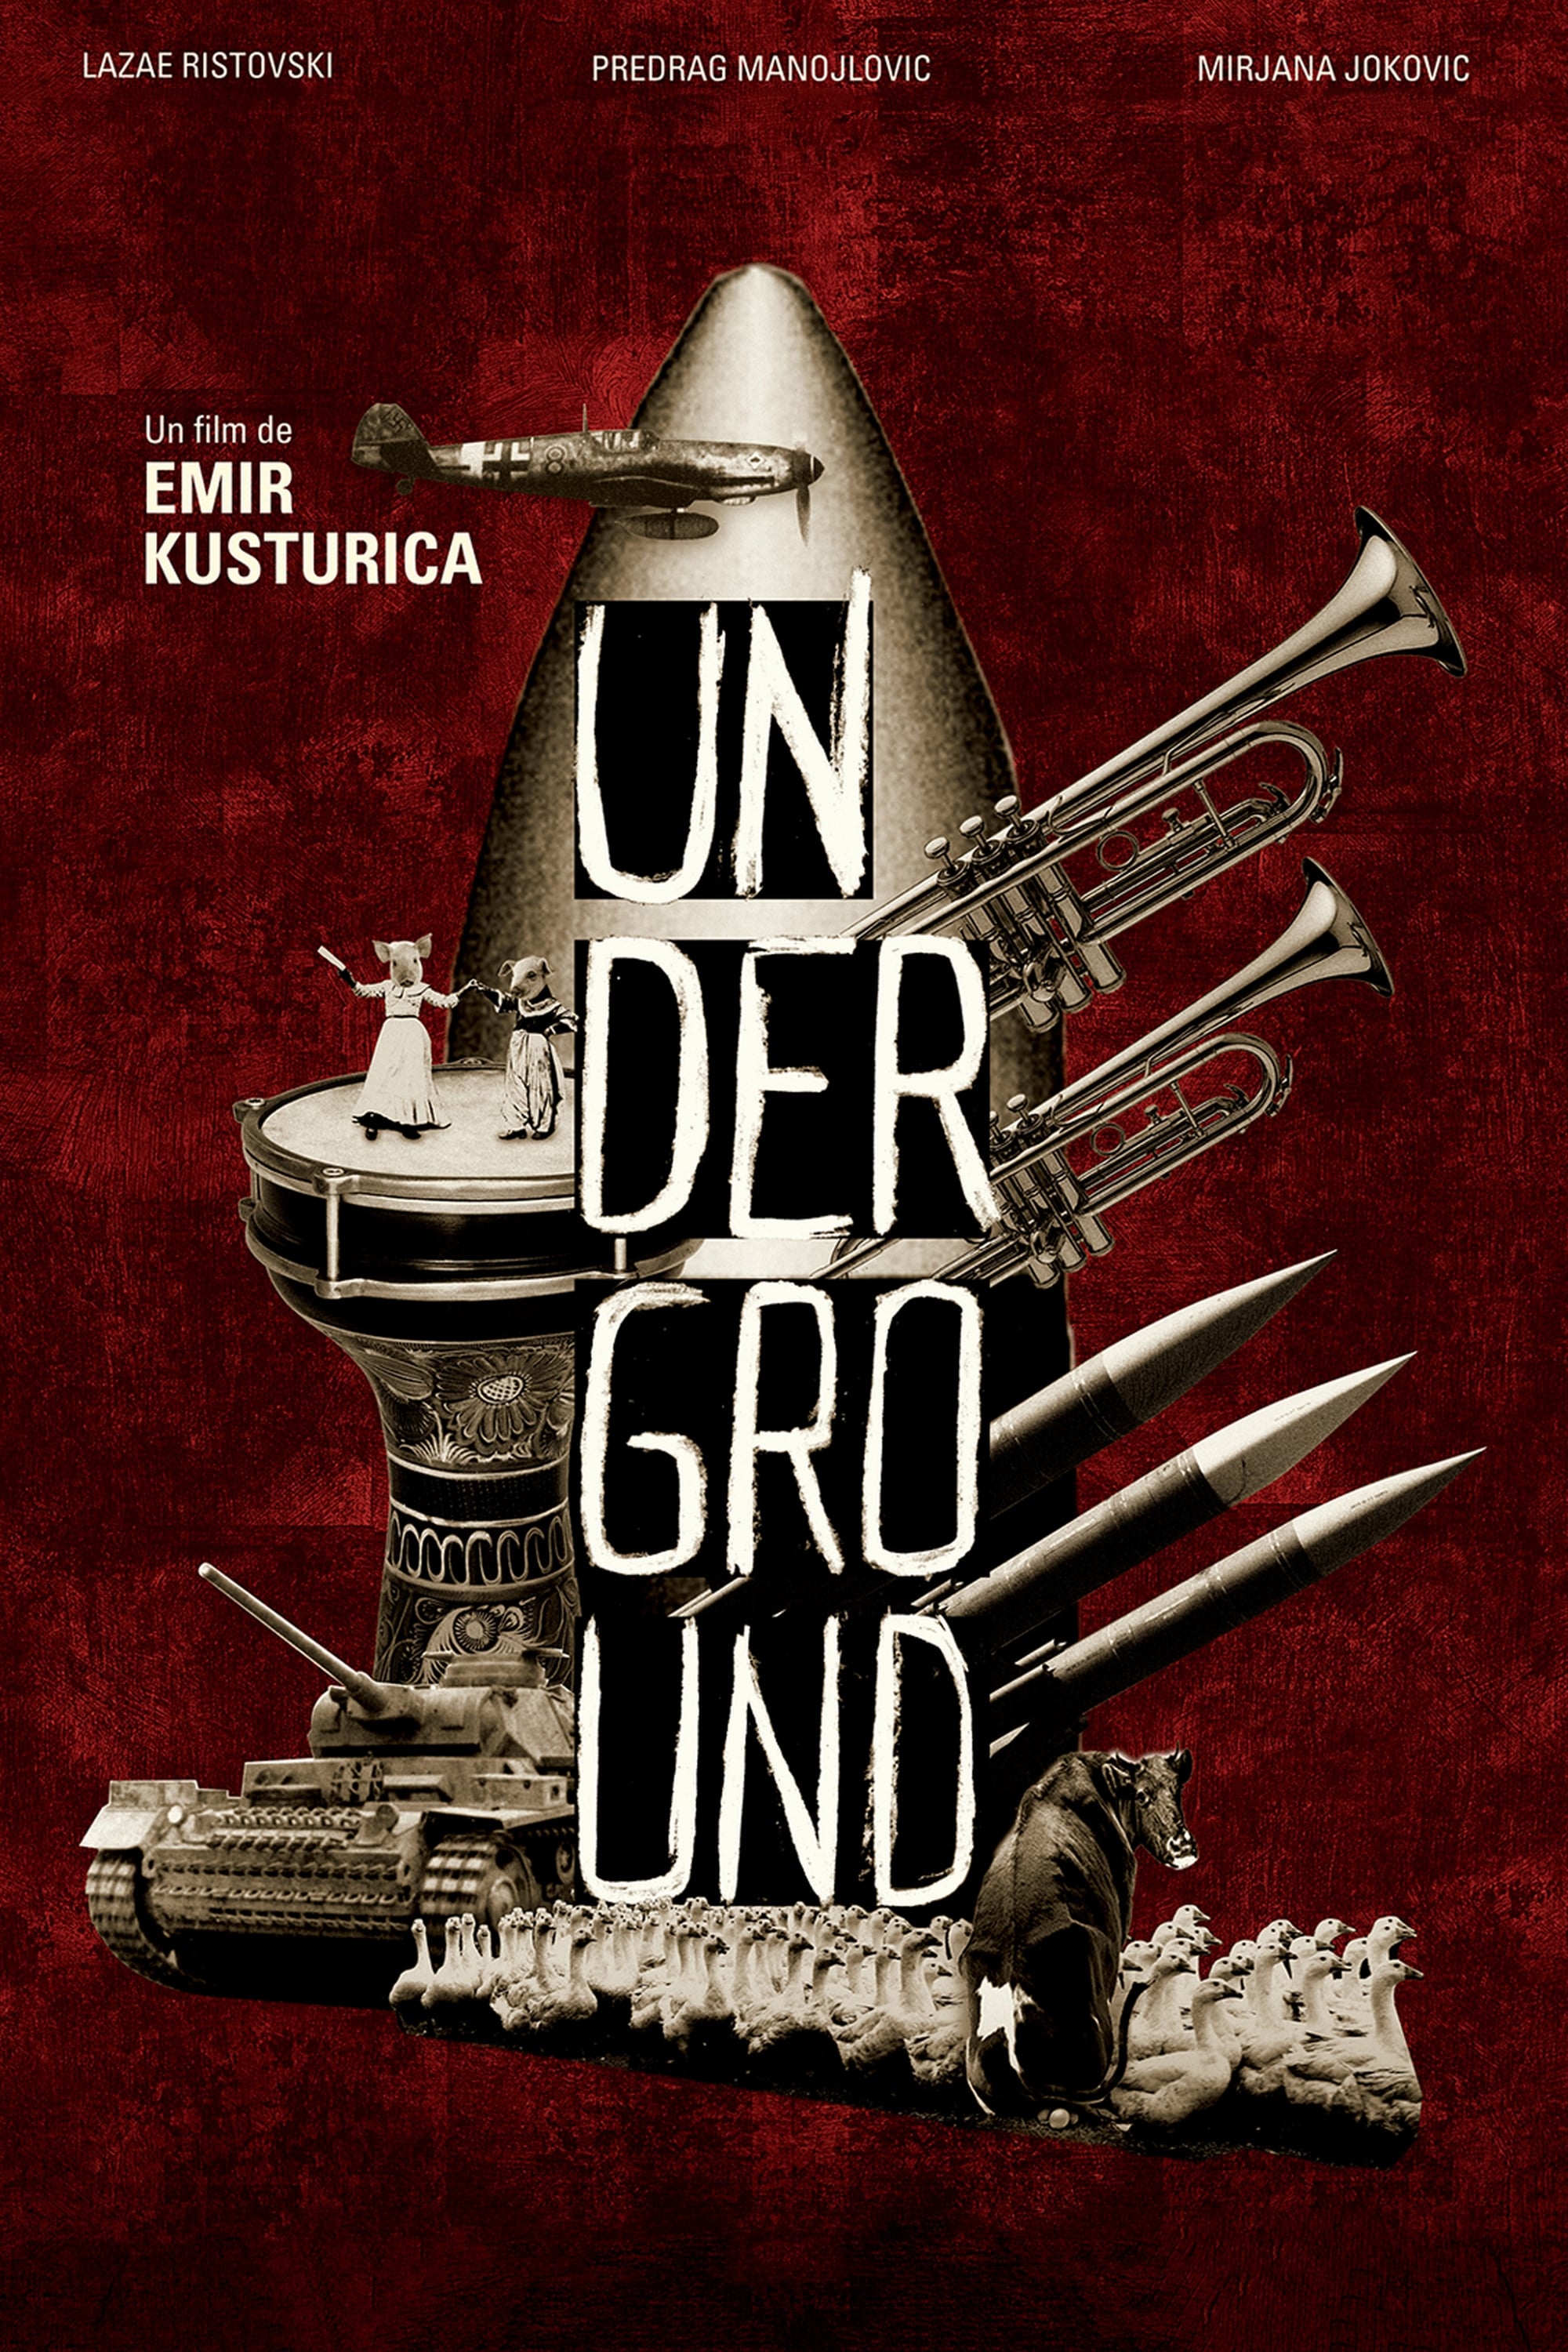 Affiche du film Underground 13556